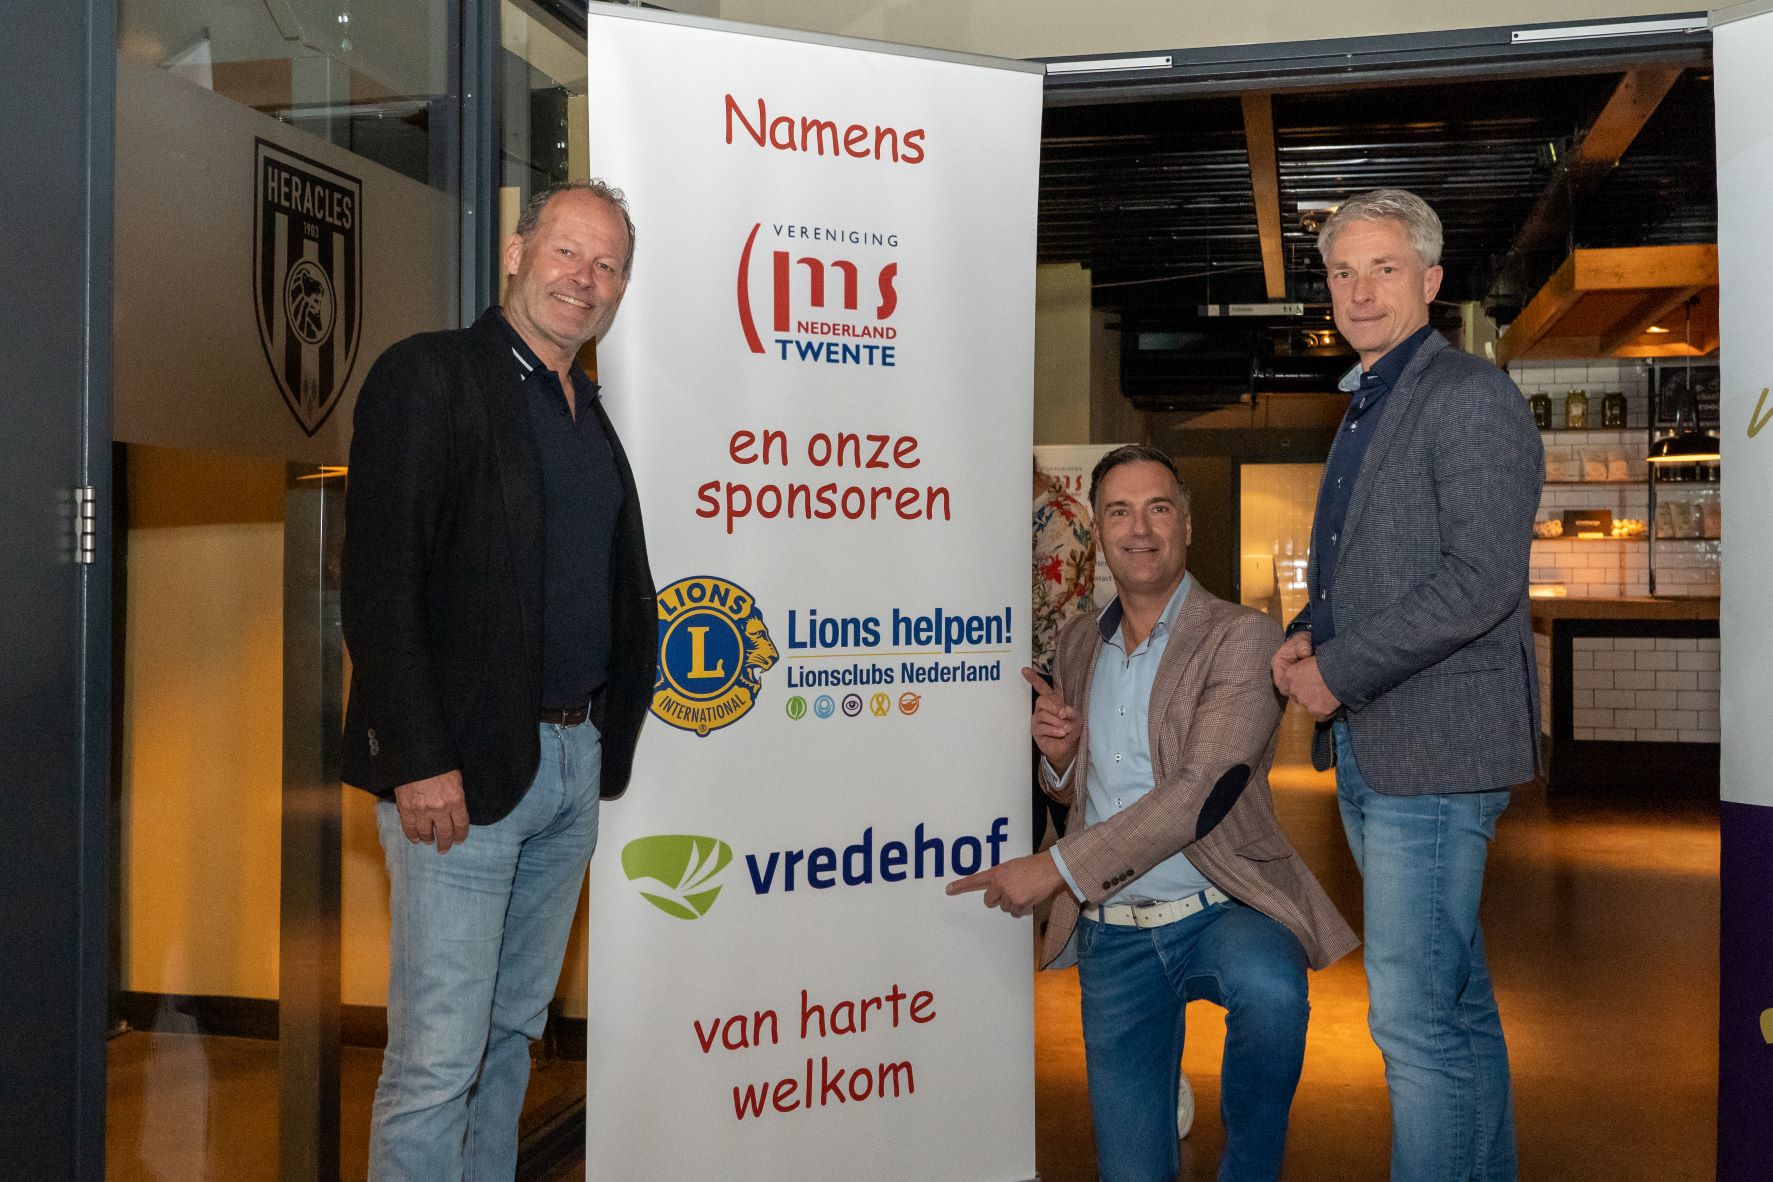 Vredehof sponsor Voorjaarsbijeenkomst Vereniging MS Nederland - Twente